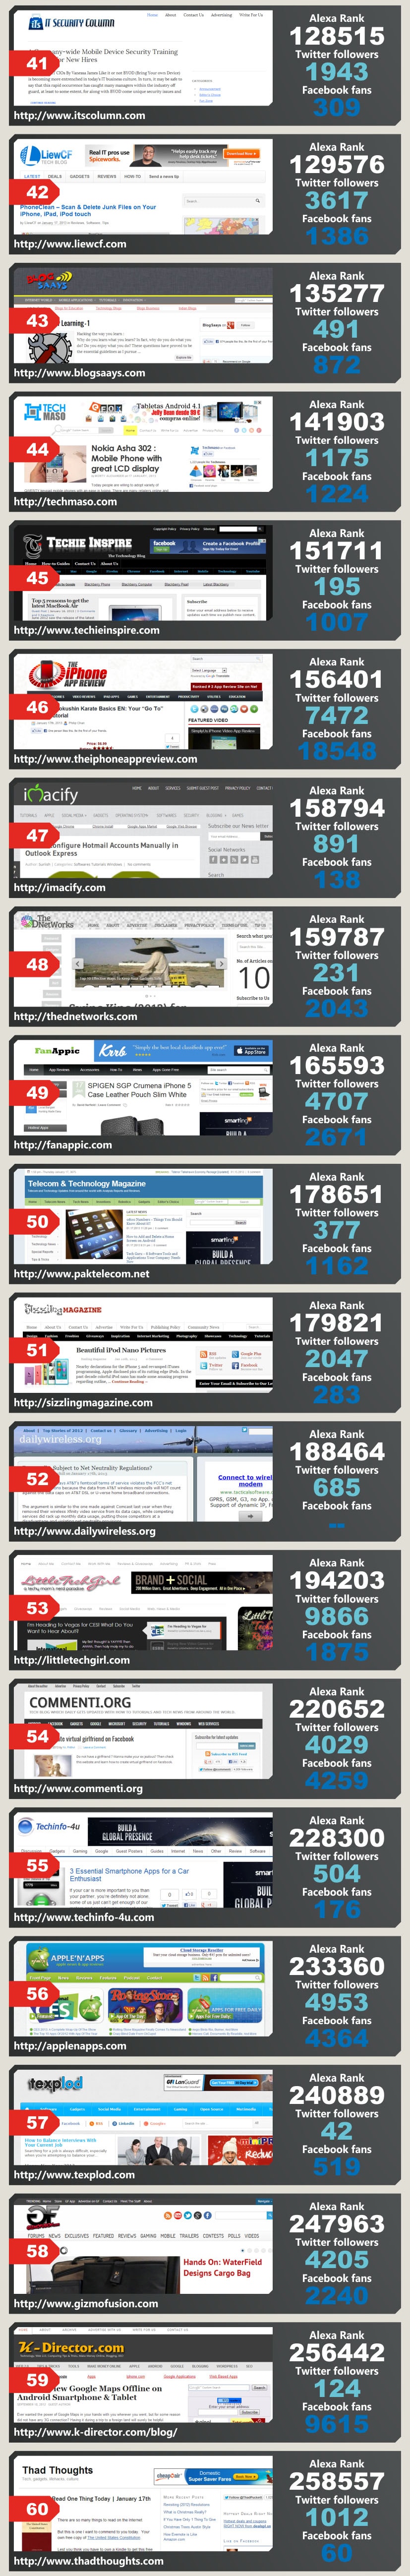 top-technology-blogs-2013